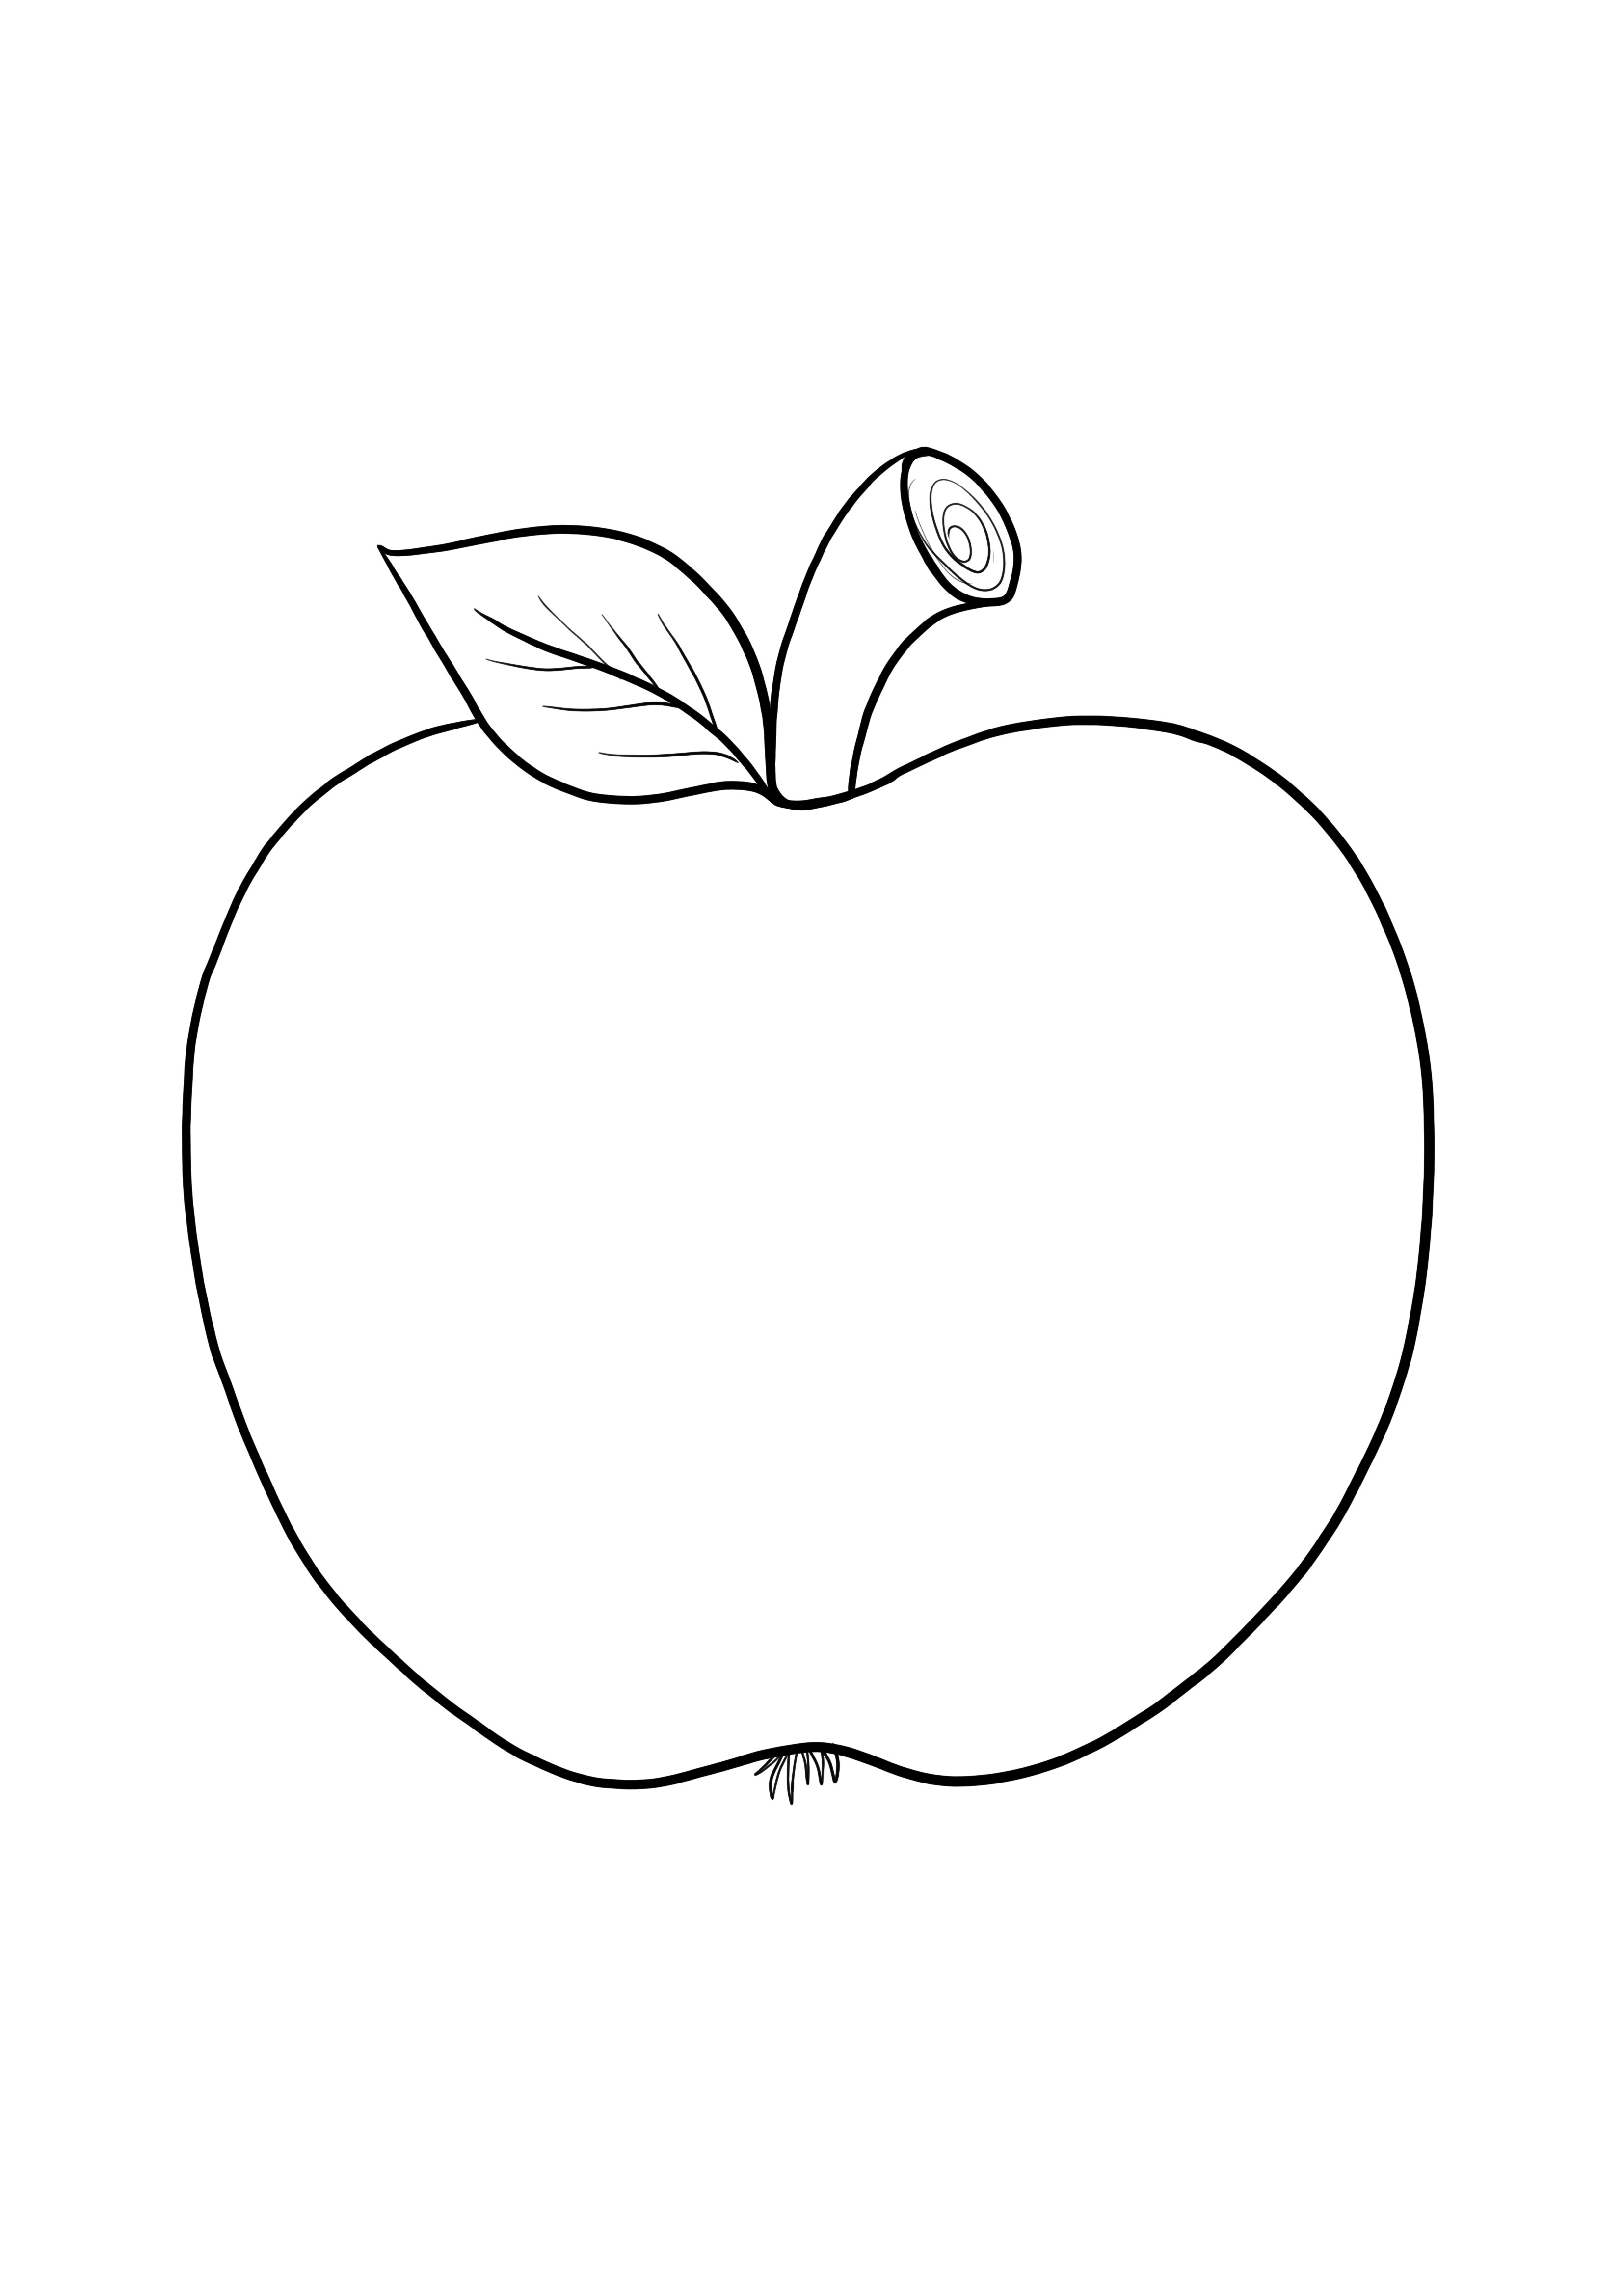 Yksinkertainen tyhjä omenakuva, jonka avulla voit helposti värittää ja tulostaa lapset ilmaiseksi